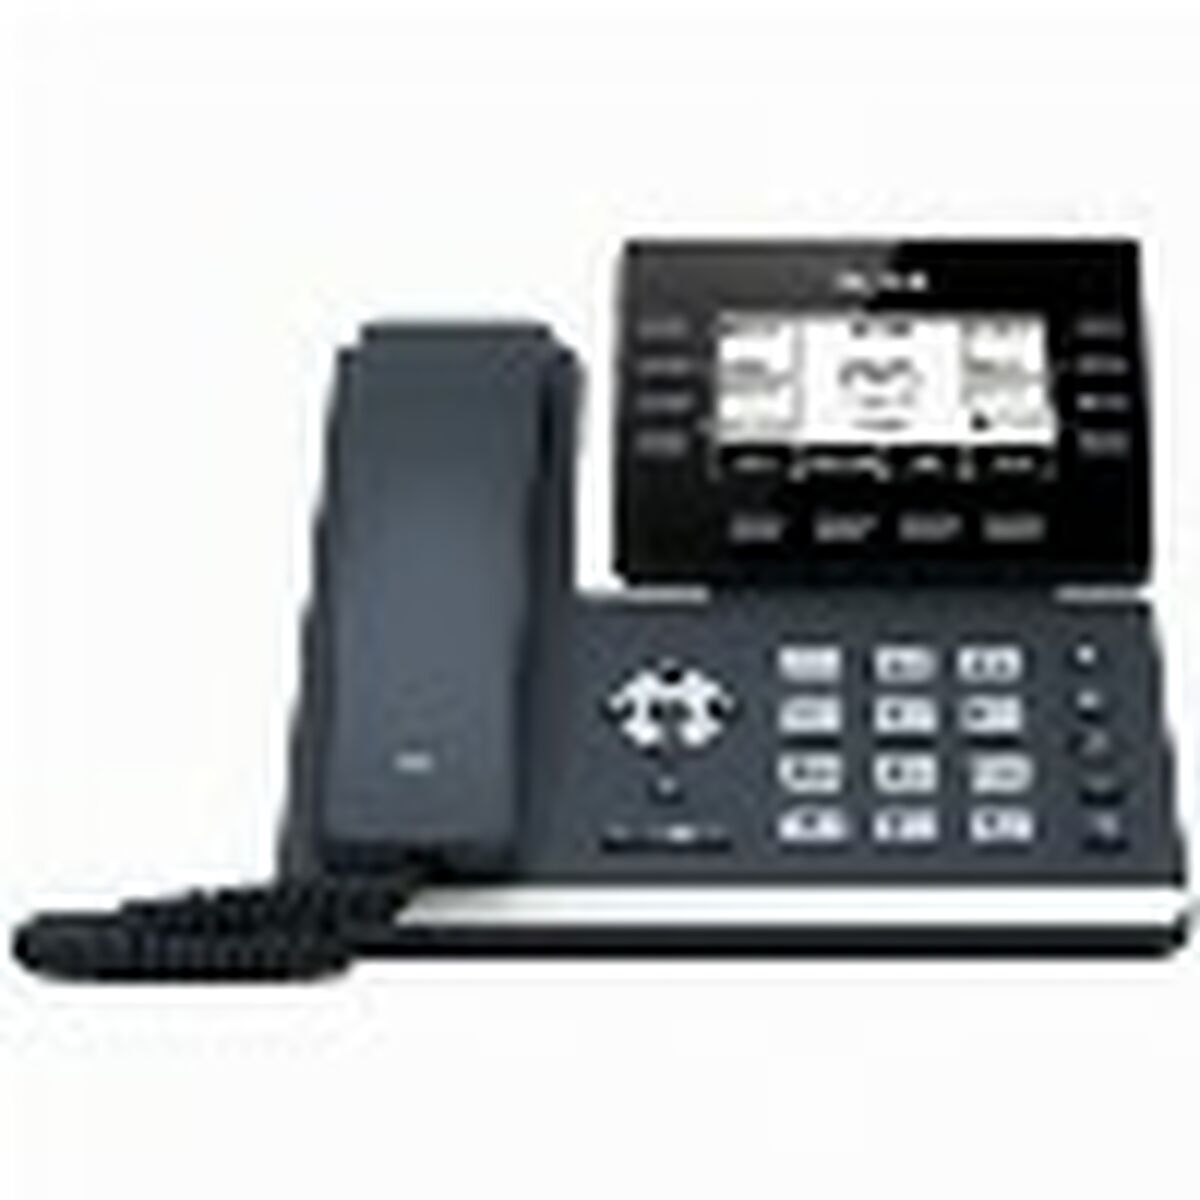 Tuntitarjouksena verkkokaupassamme Korhone: Tietokoneet & Elektroniikka on IP-puhelin Yealink T53W Musta